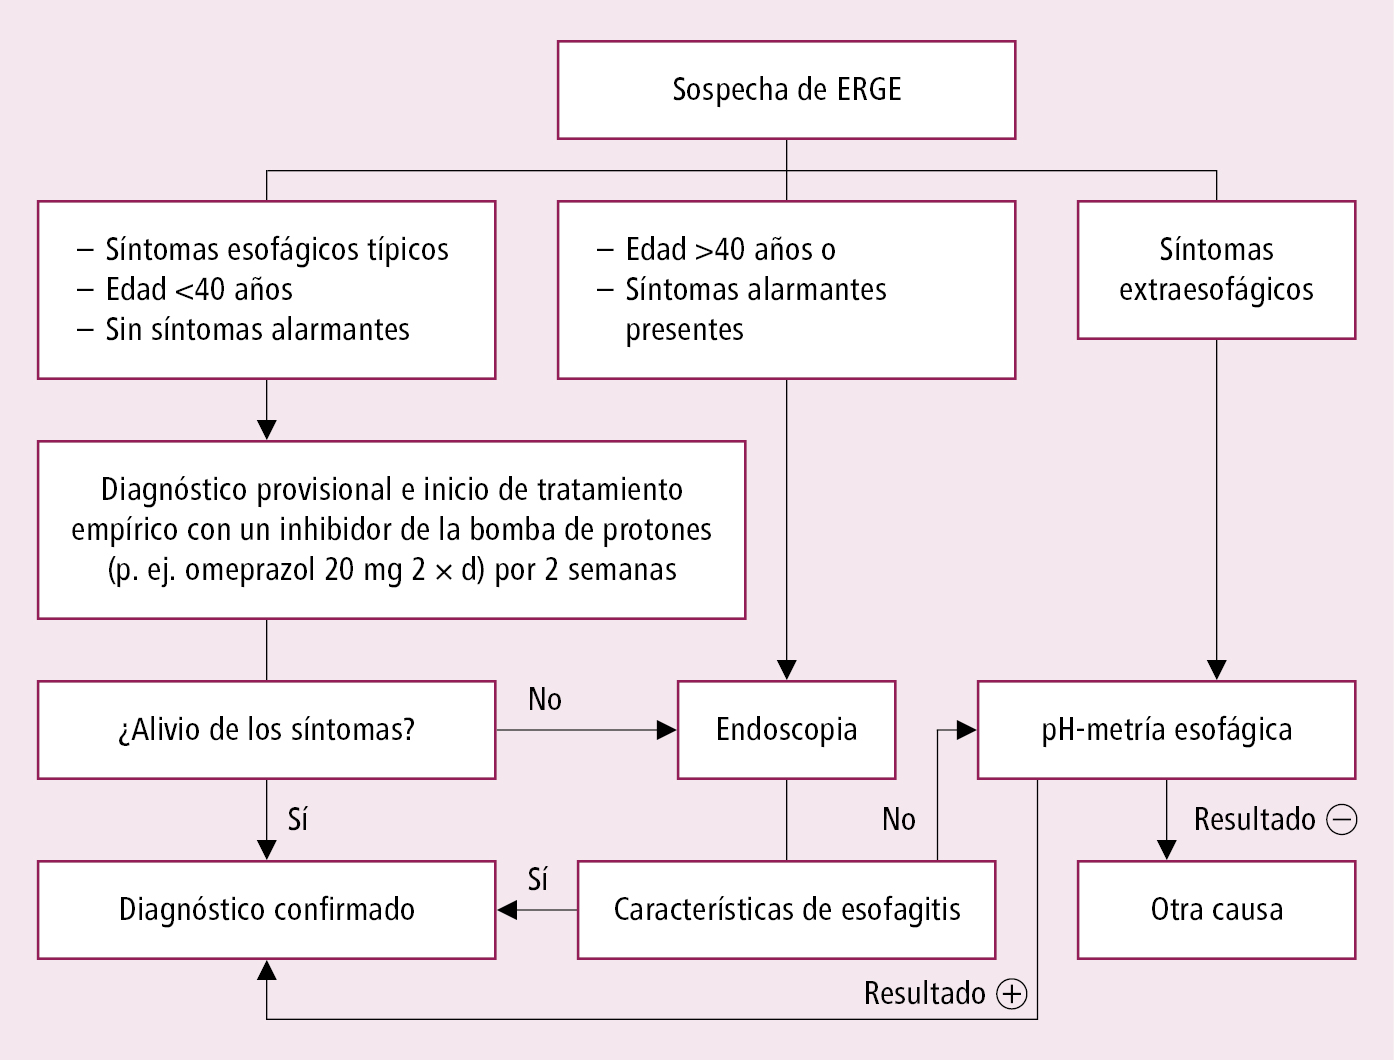    Fig. 4.2-1.  Algoritmo de actuación en la enfermedad por reflujo gastroesofágico (ERGE)  